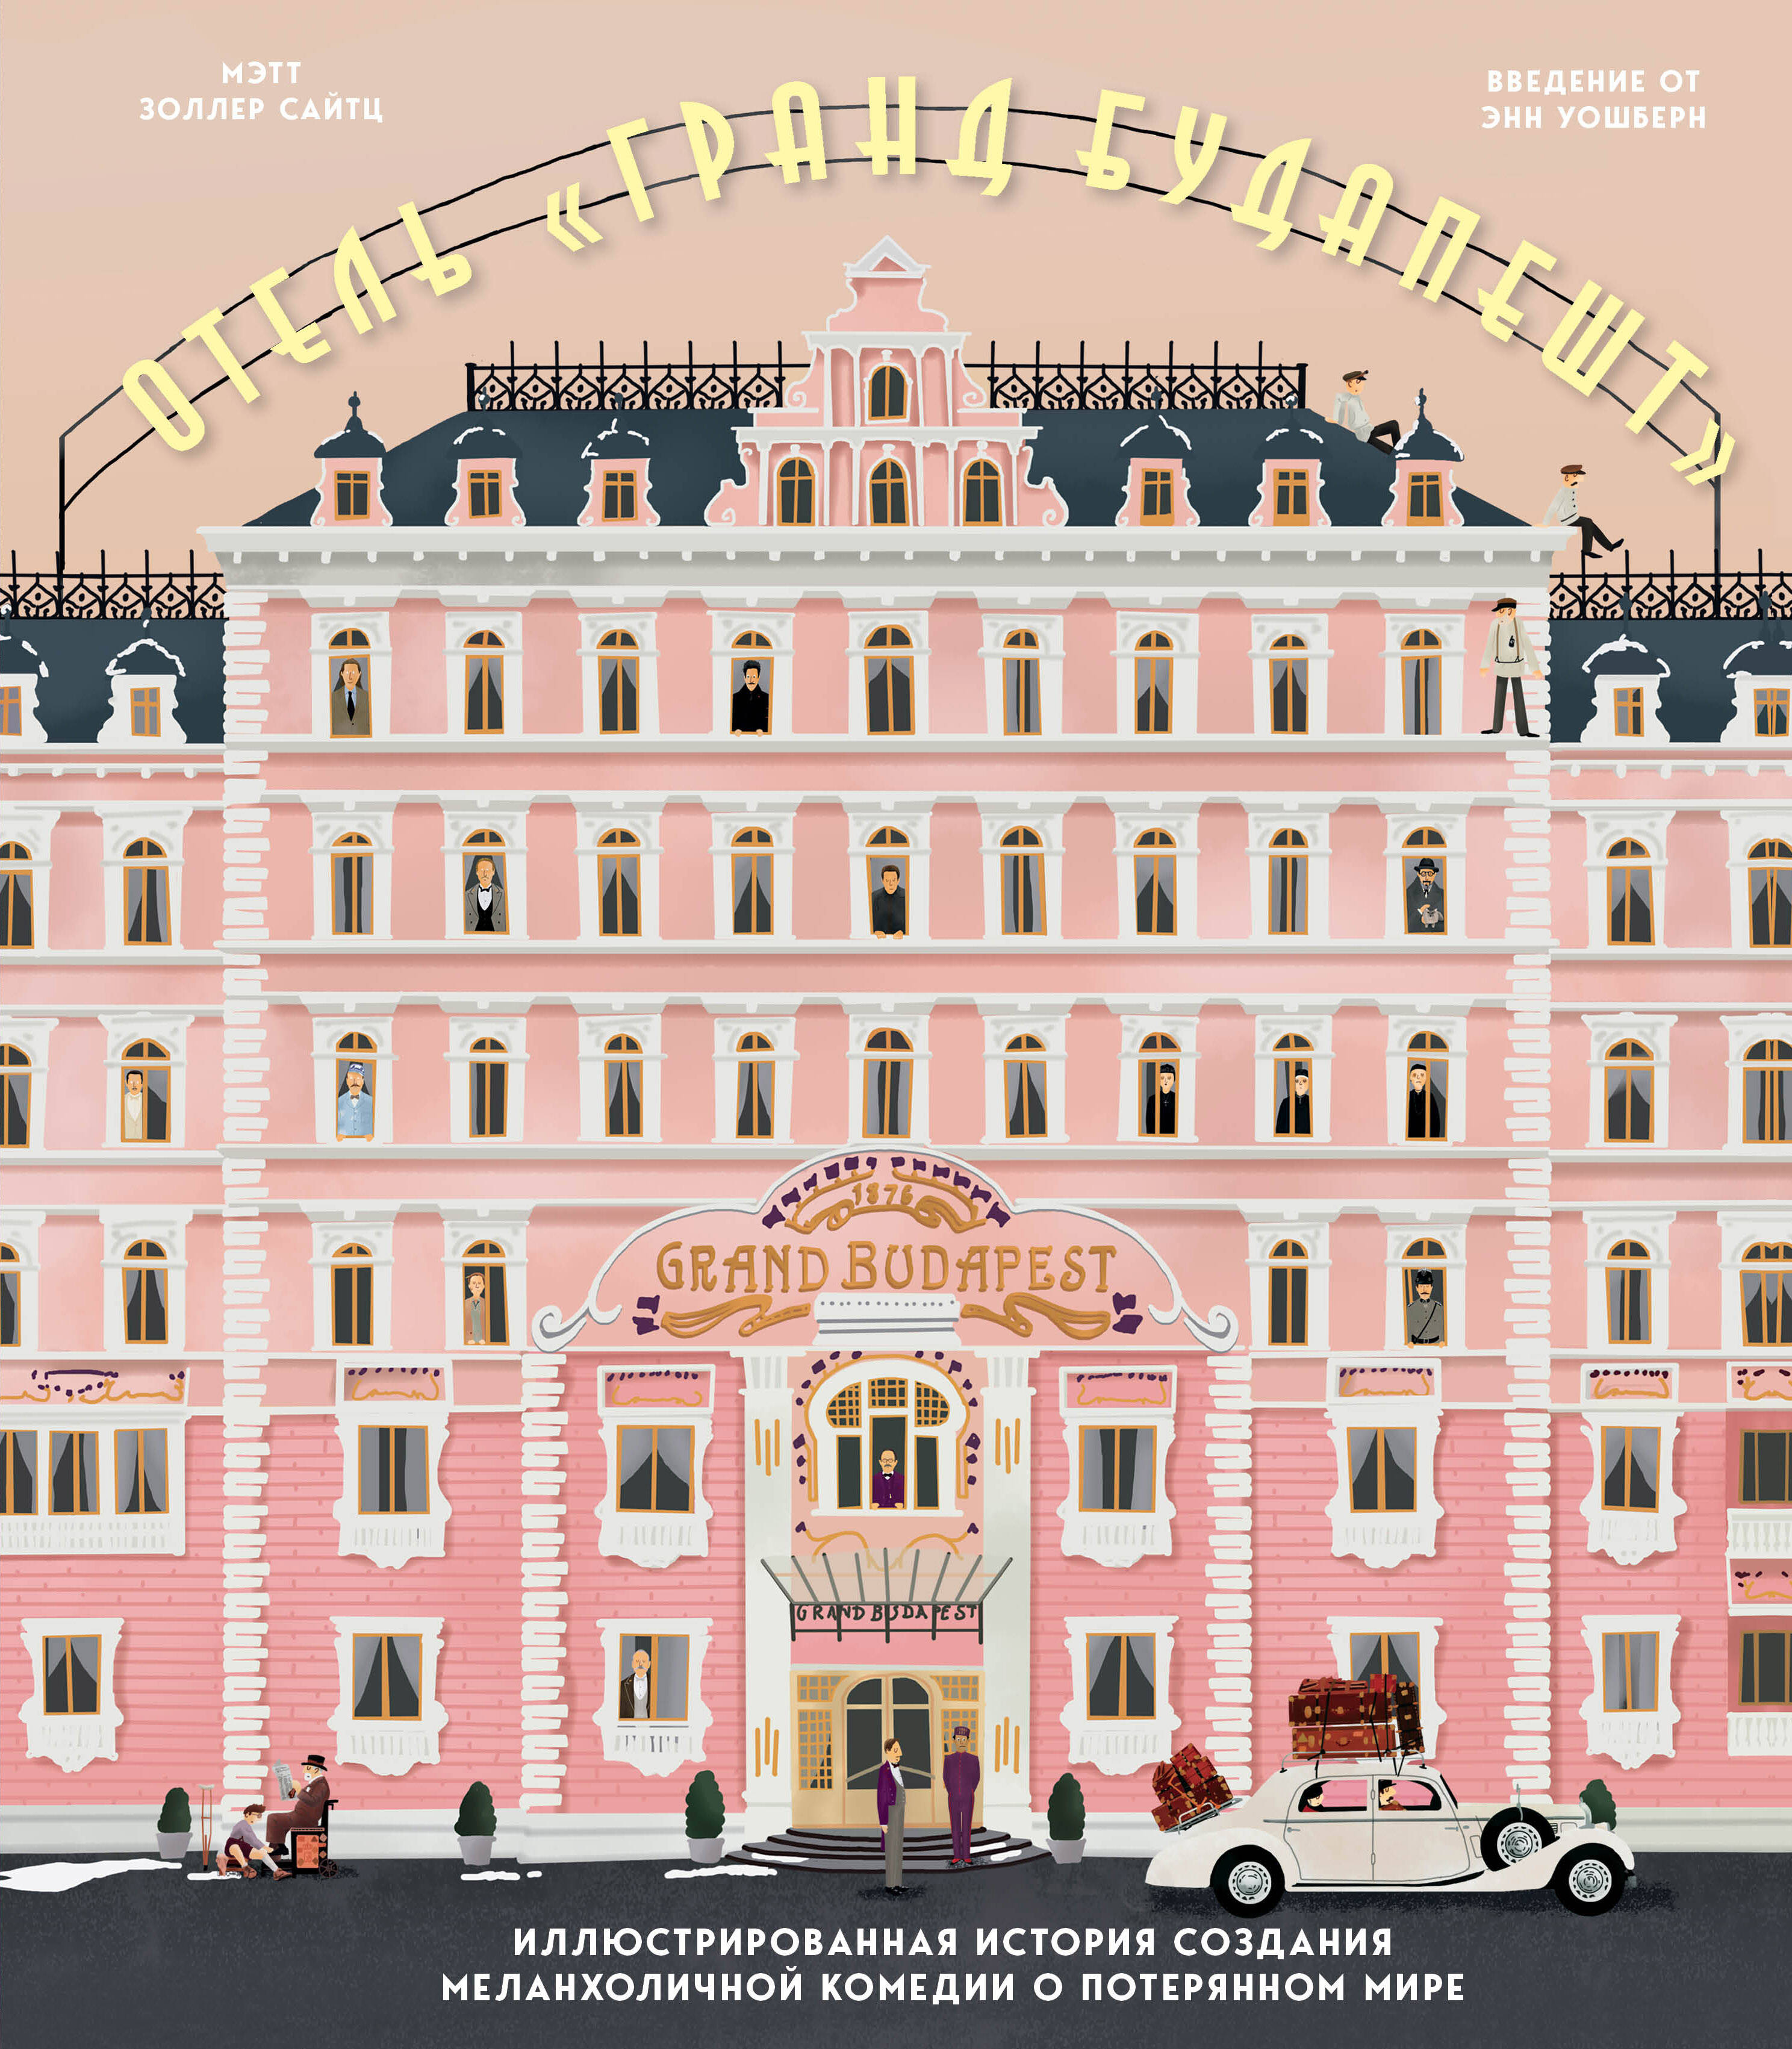 Сайтц Мэтт Золлер - Отель "Гранд Будапешт". Иллюстрированная история создания меланхоличной комедии о потерянном мире